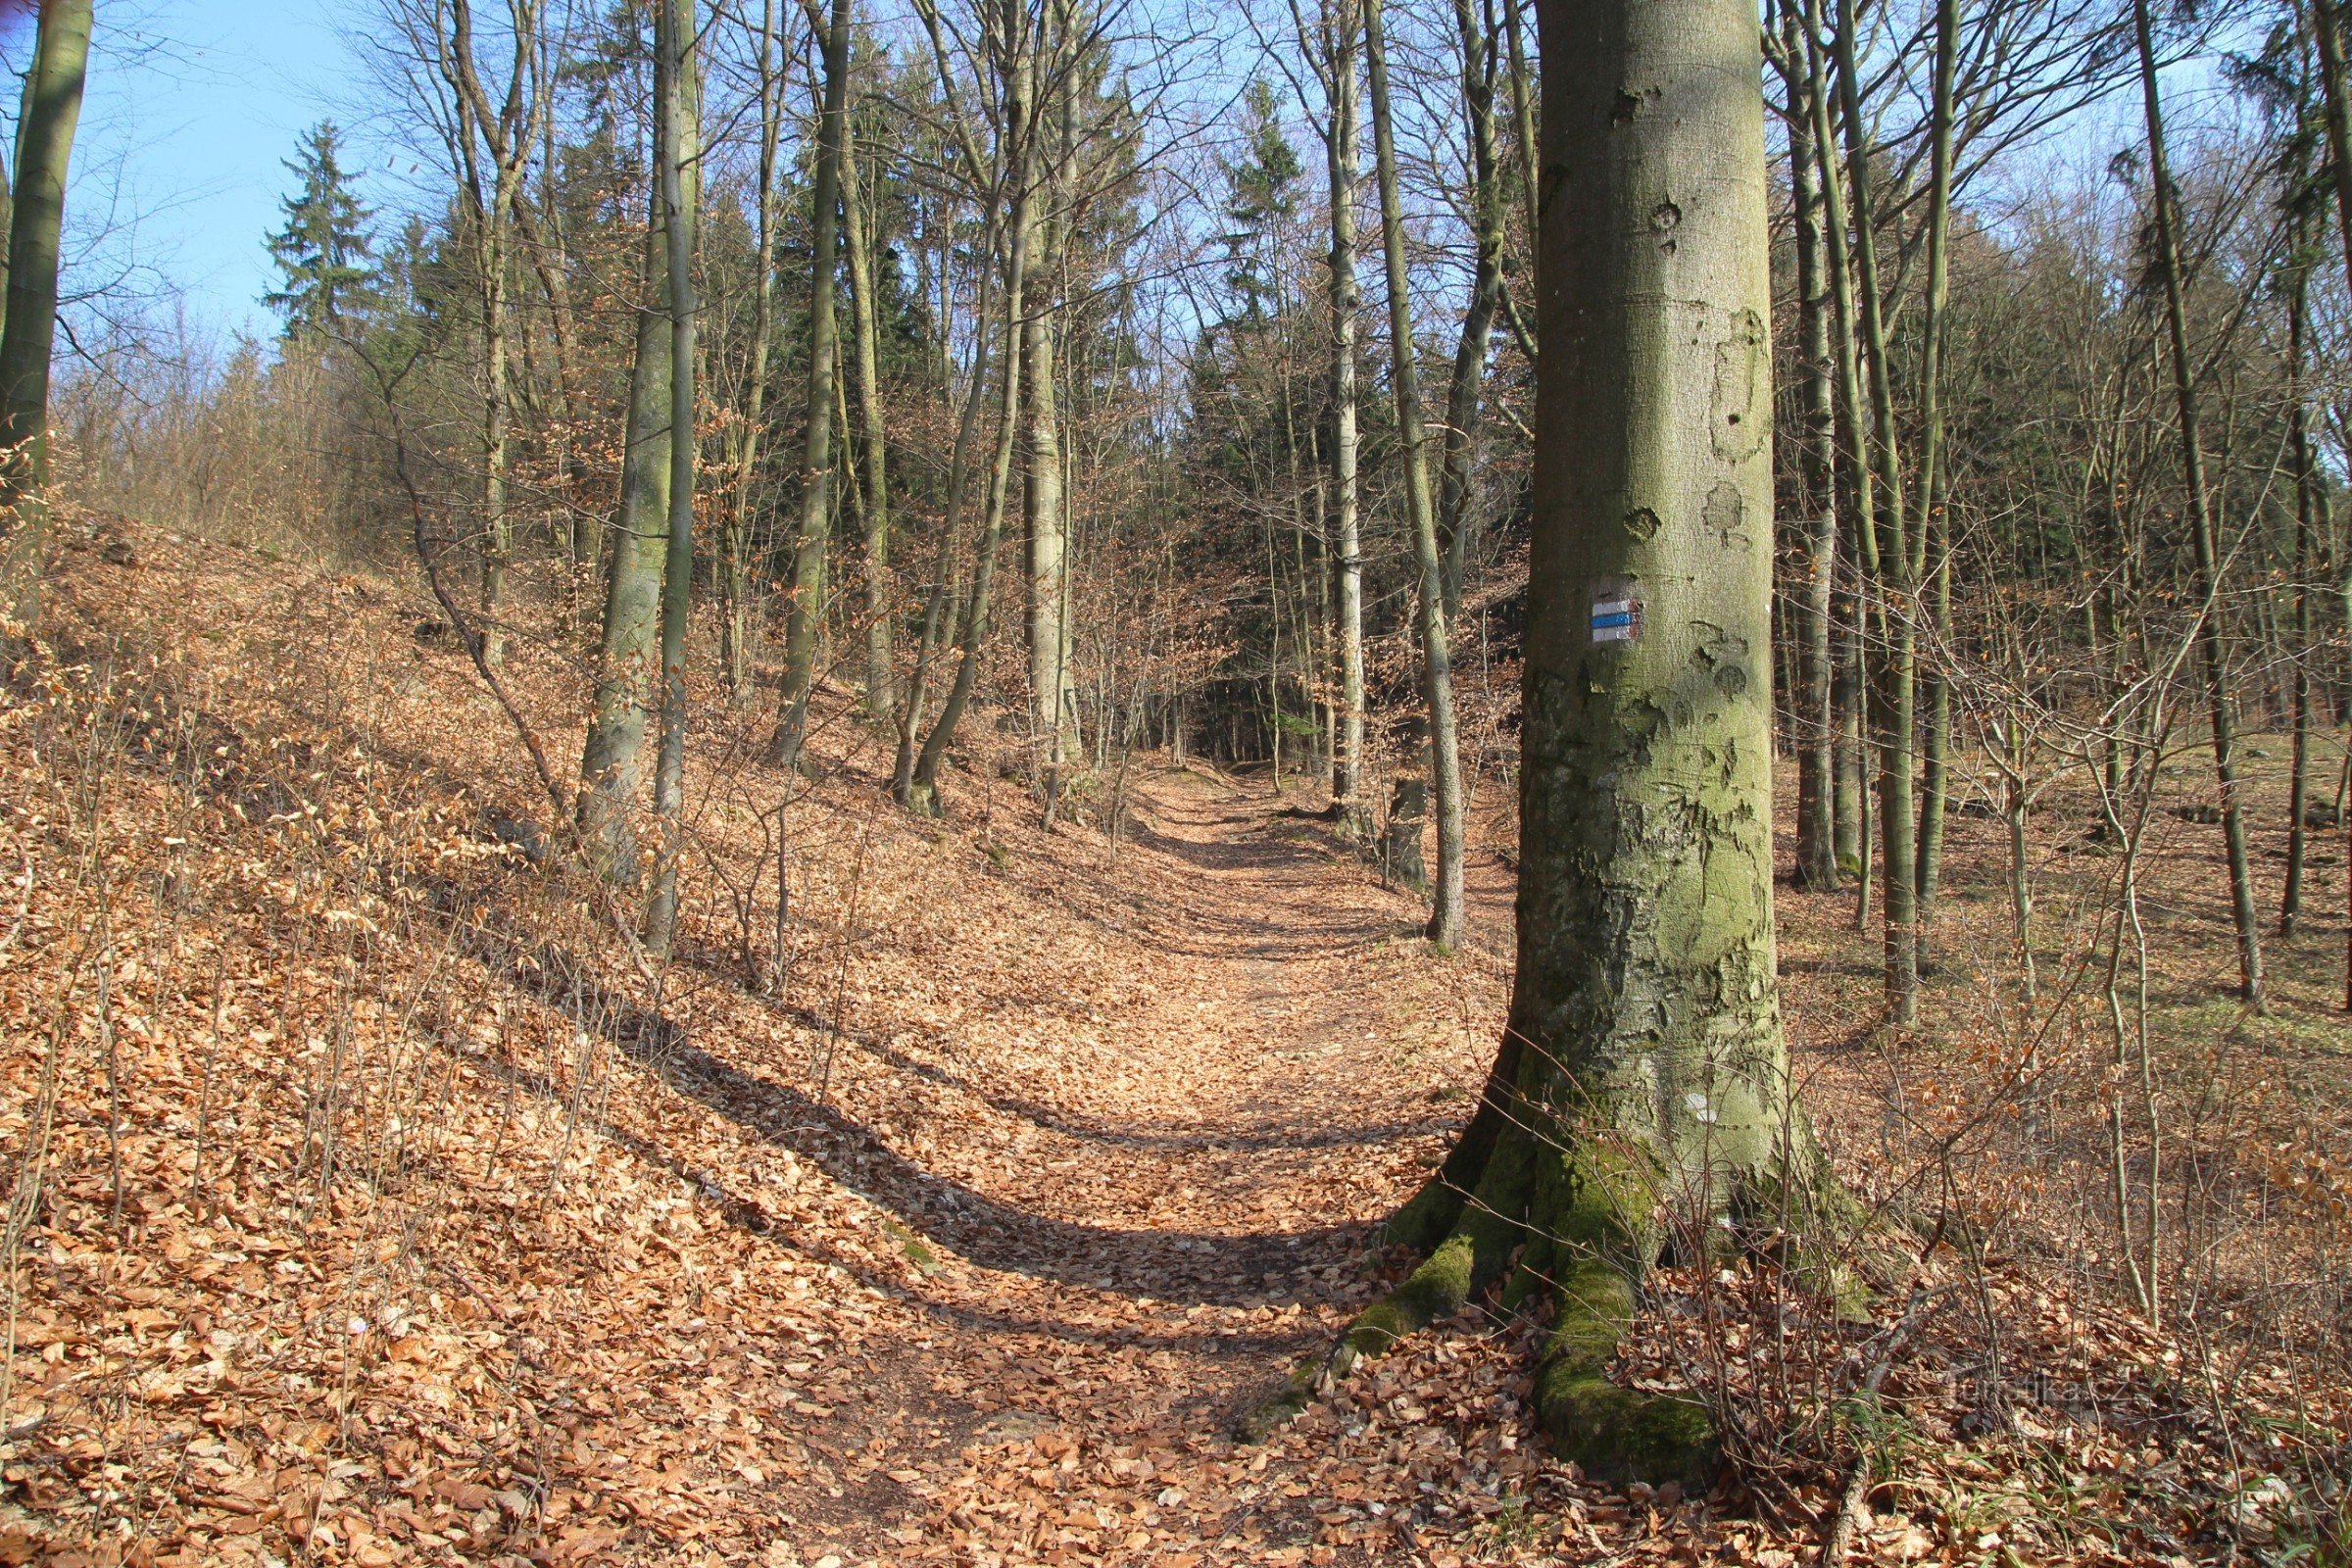 Subida ao longo do marcador azul na borda da floresta